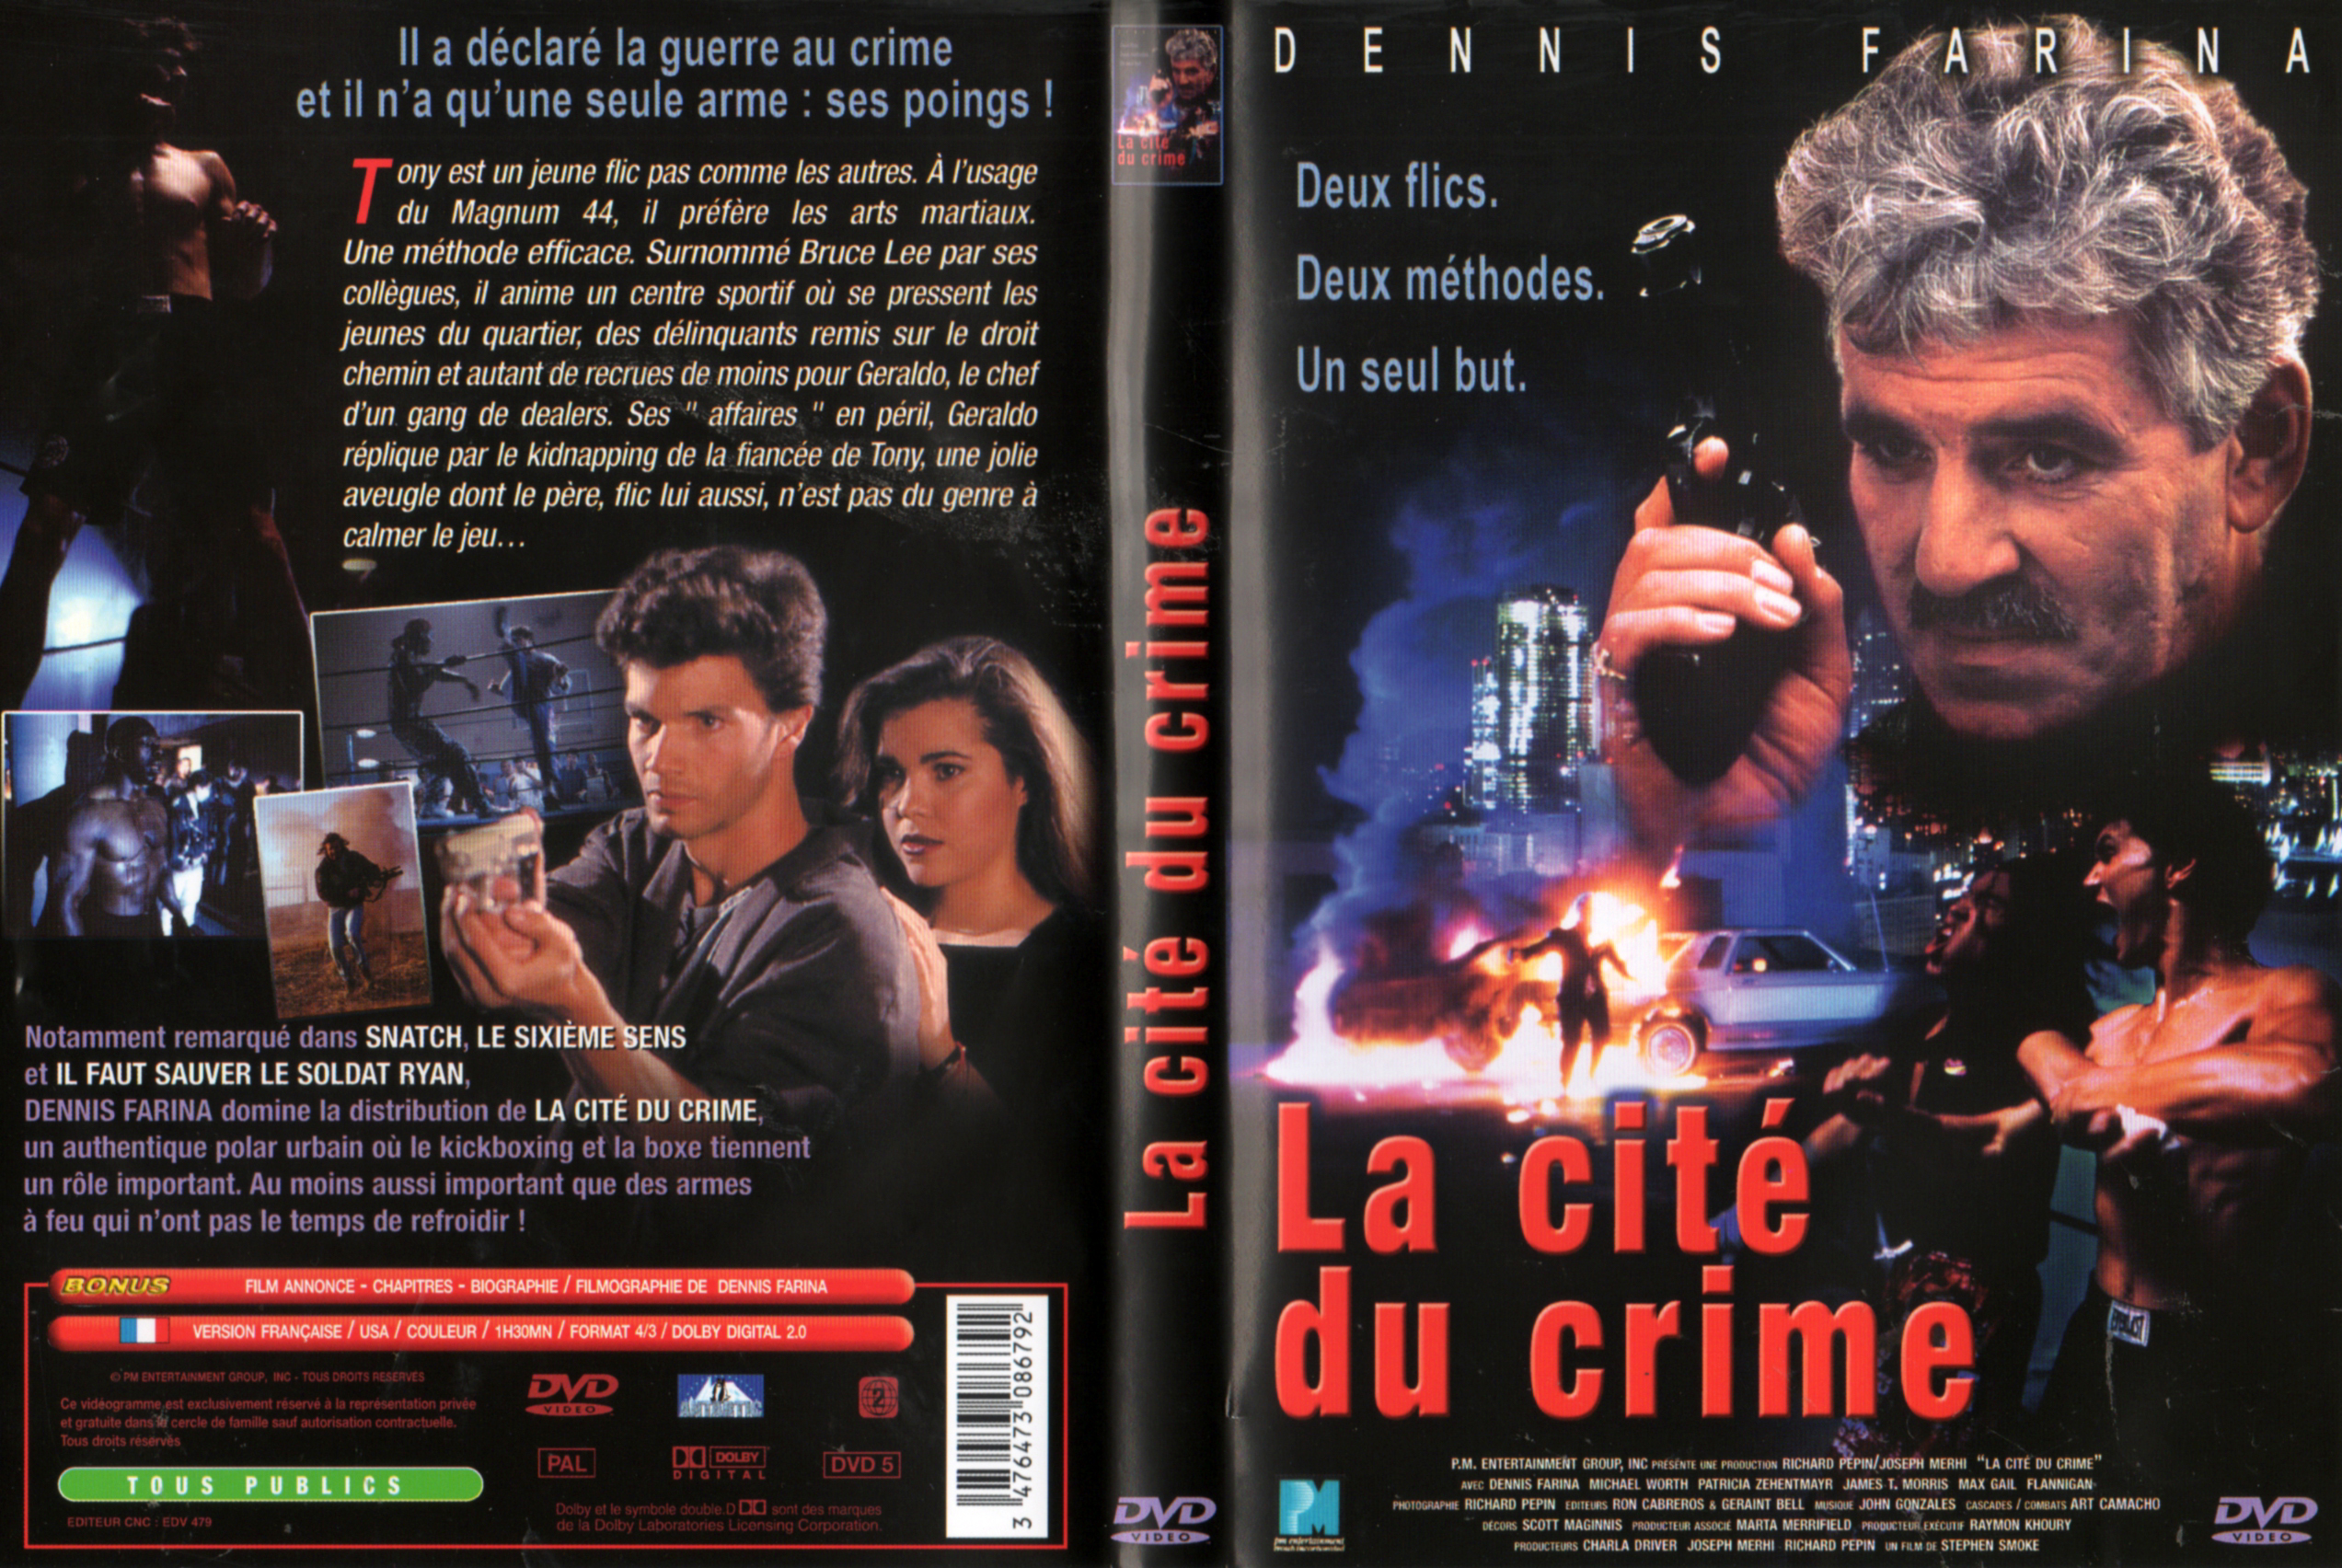 Jaquette DVD La cit du crime